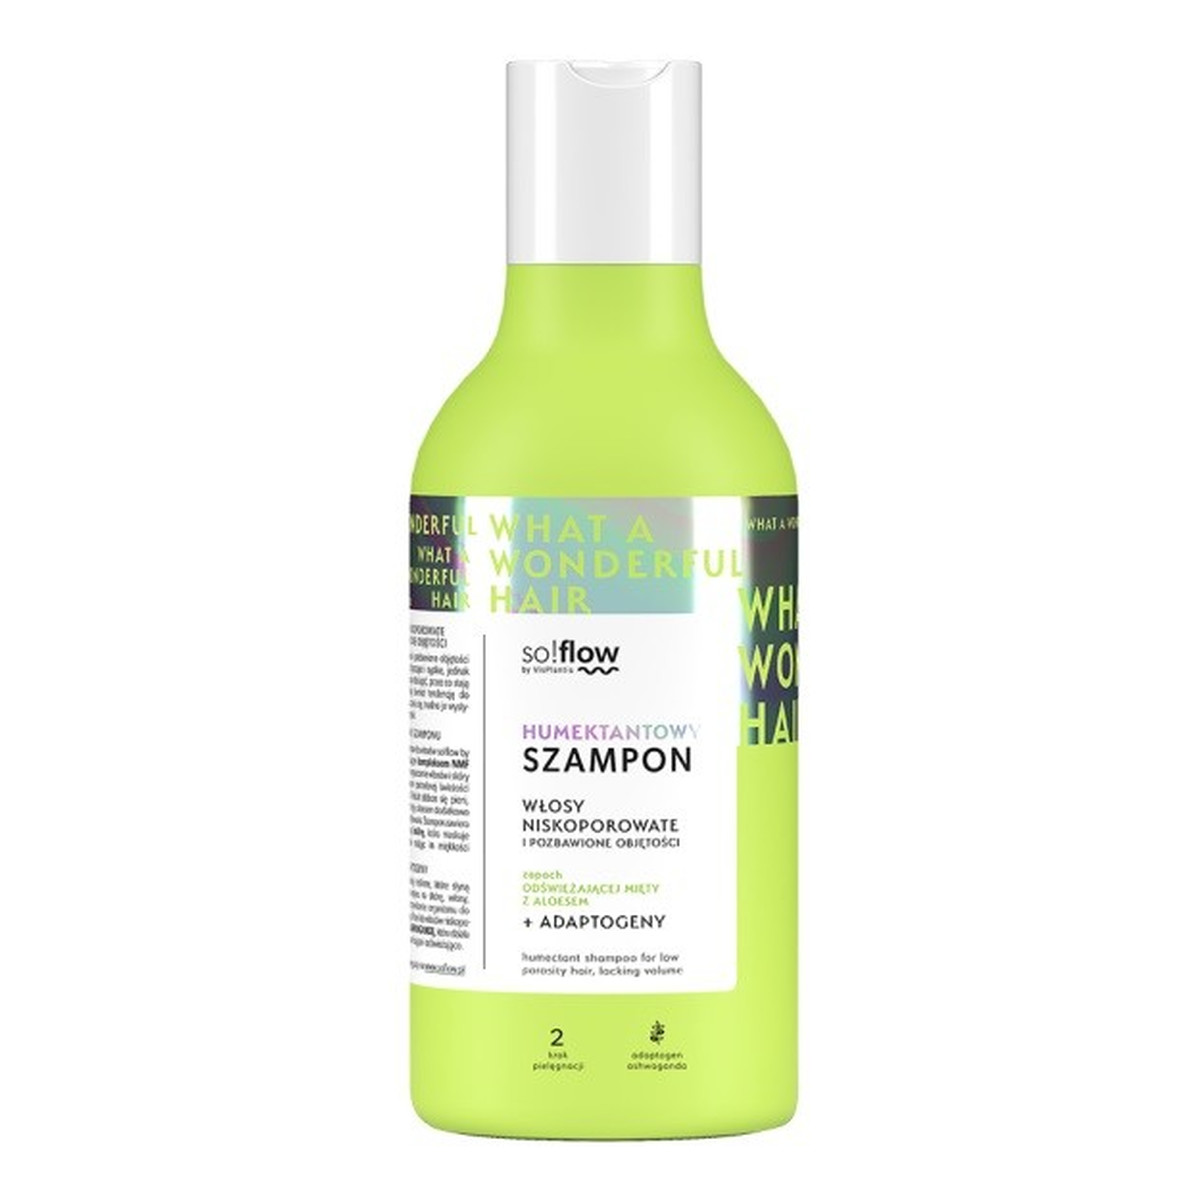 so!flow humektantowy szampon do włosów niskoporowatych i pozbawionych objętości 400ml